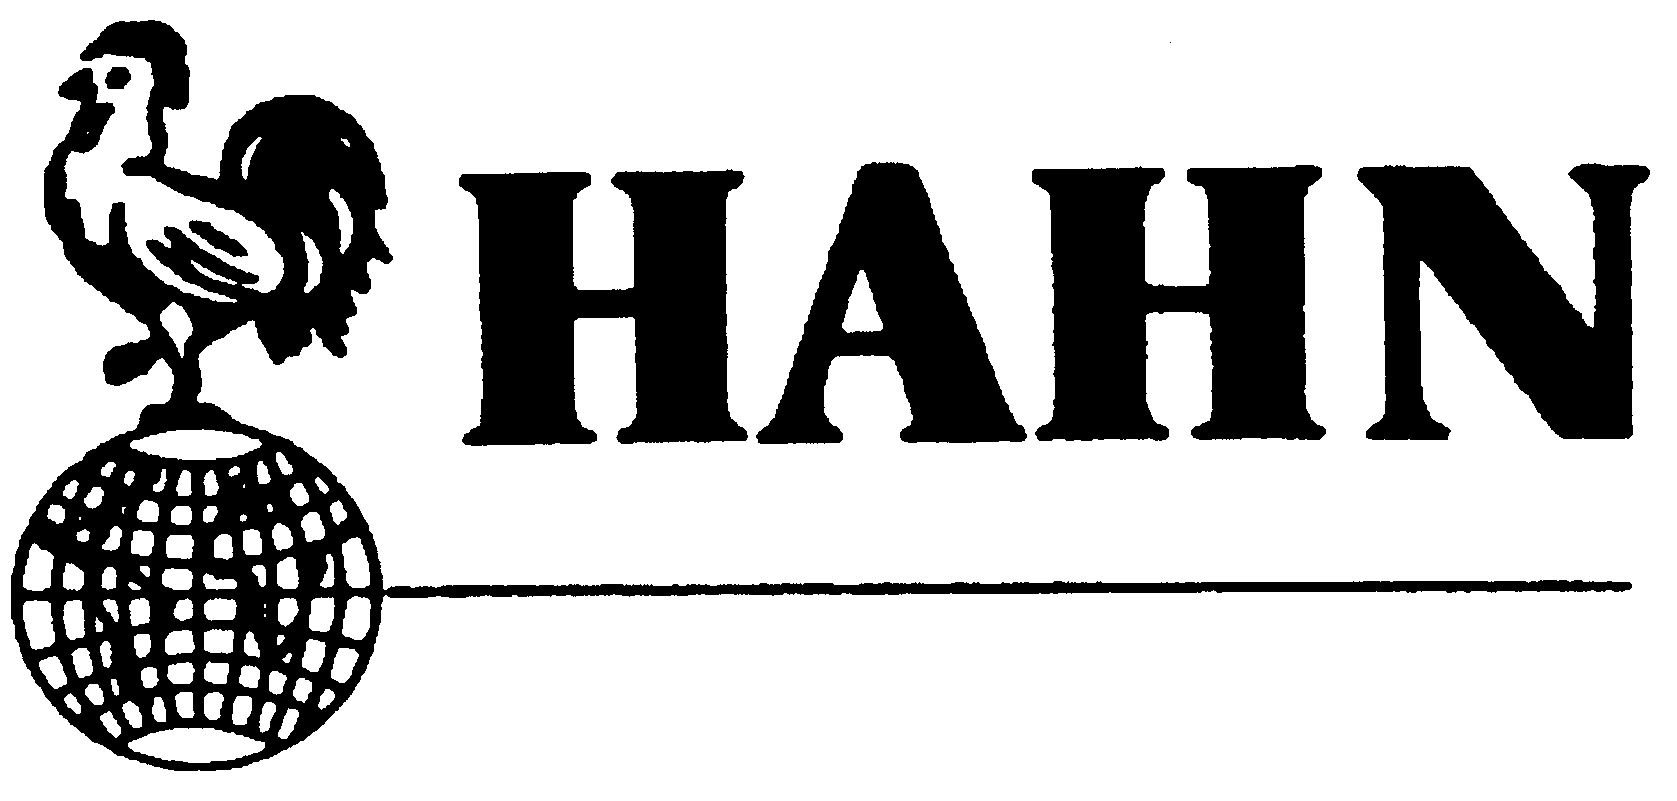 Trademark Logo HAHN